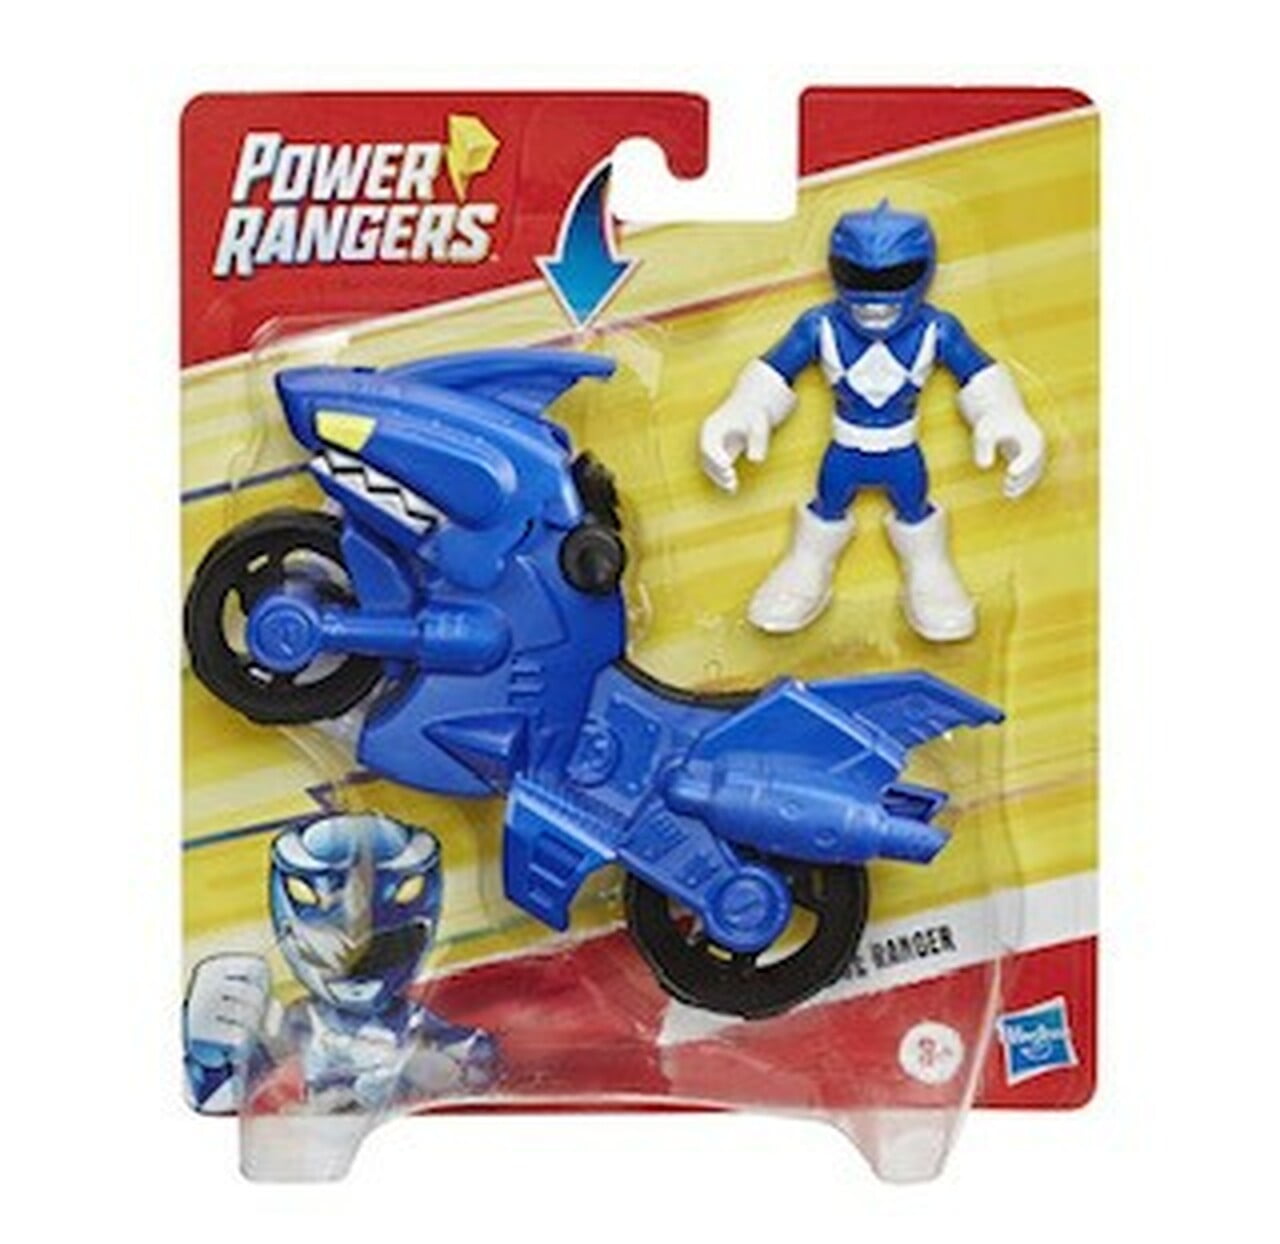 Buy Power Rangers Playskool Heroes Blue Ranger Figure Vehicle Online